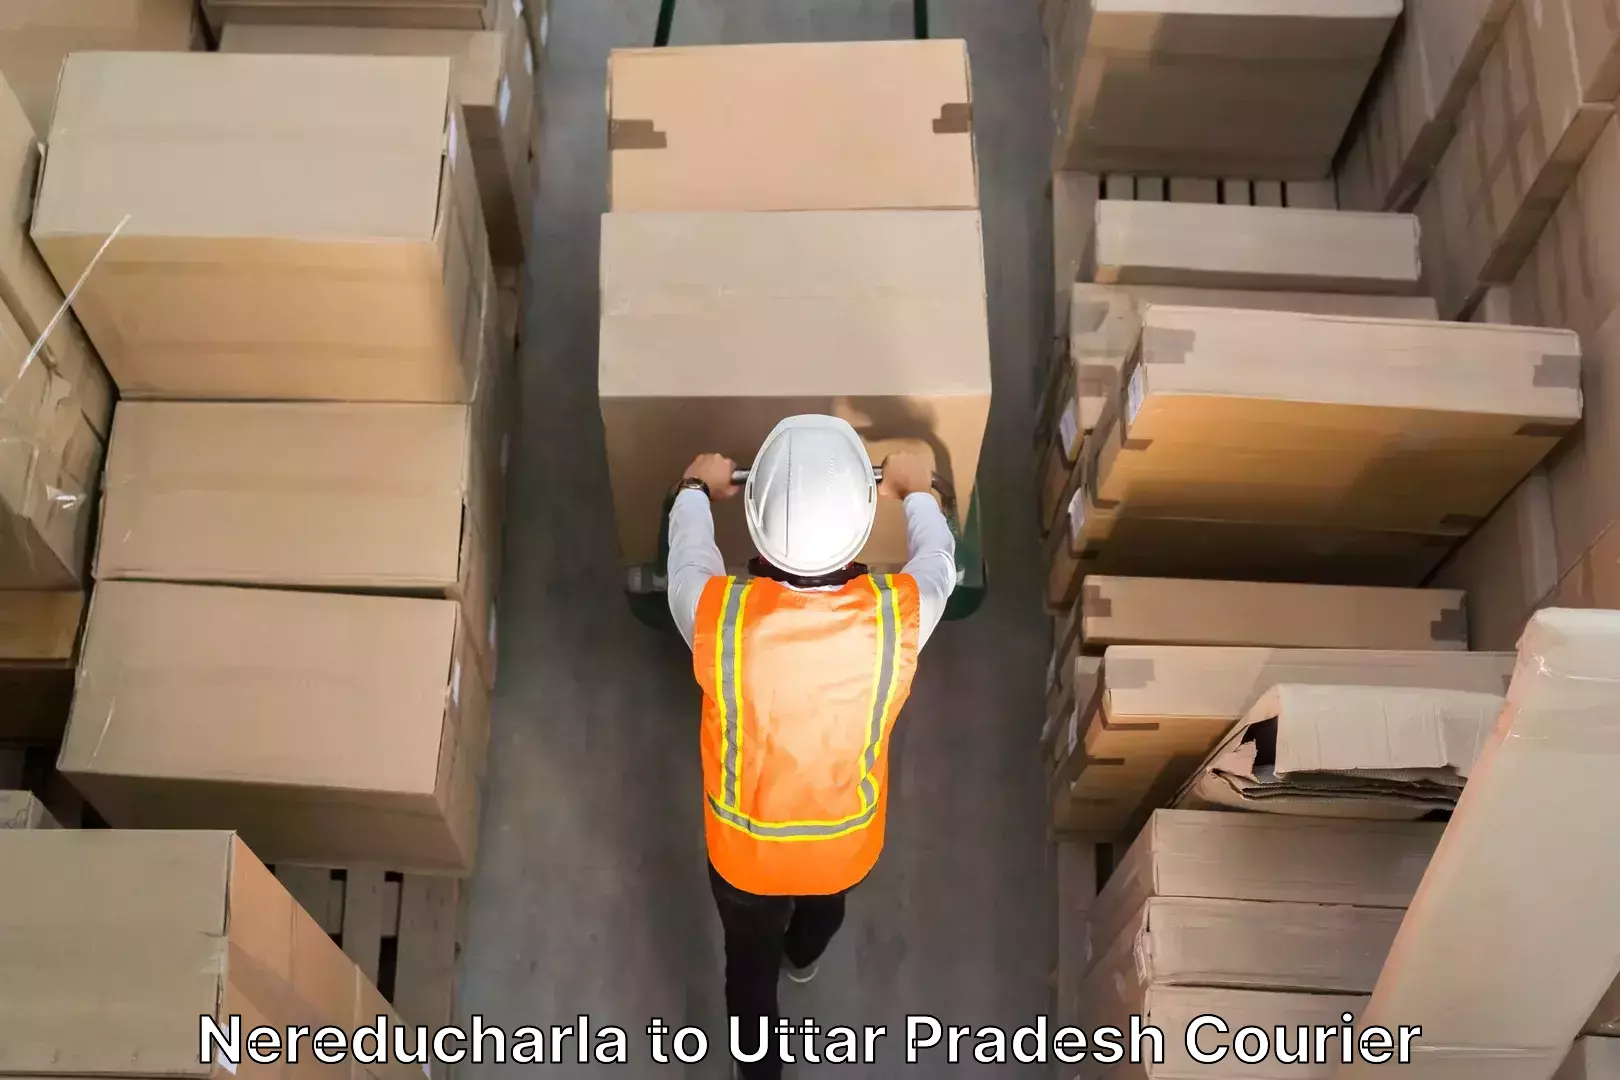 Home relocation experts Nereducharla to Uttar Pradesh